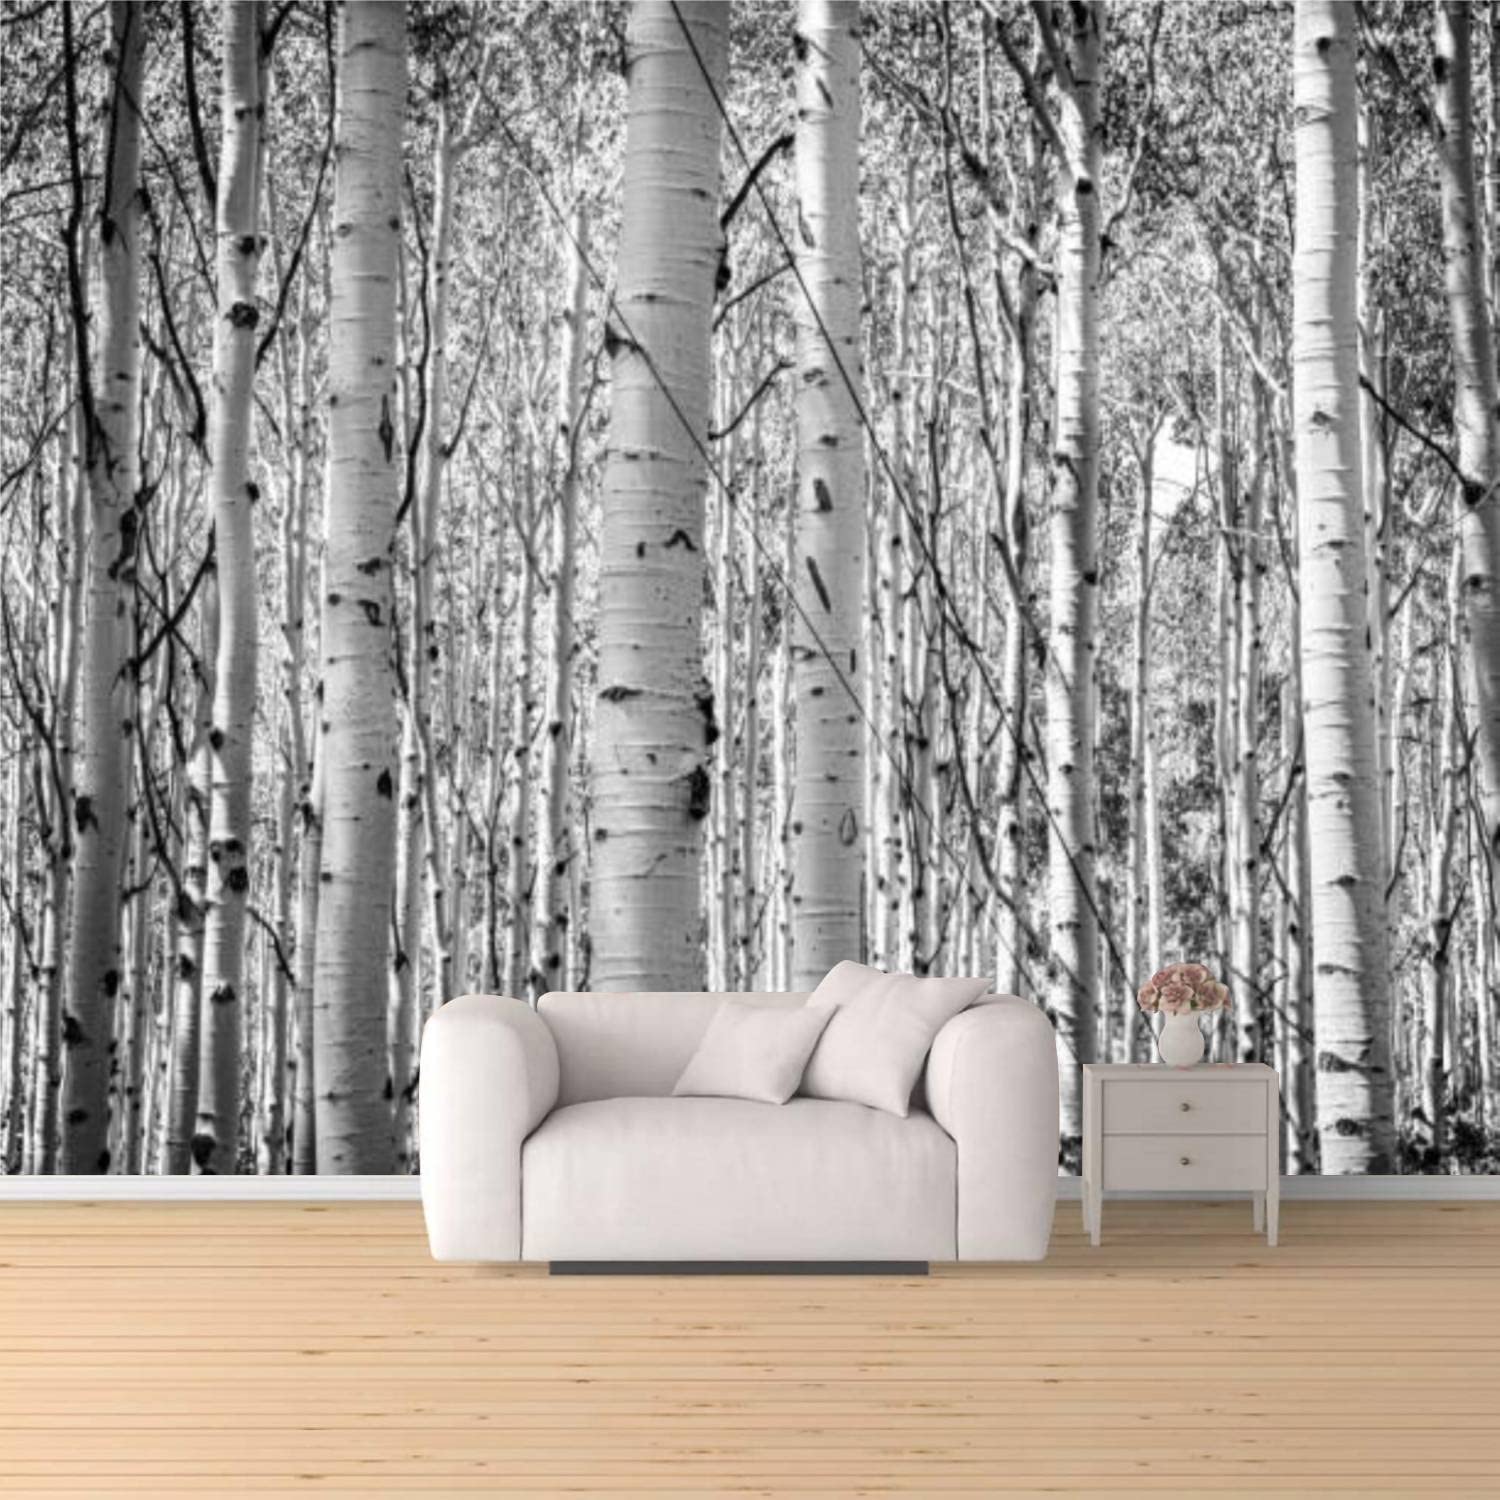 Forest aspen trees utah peel stick wallpaper removable self